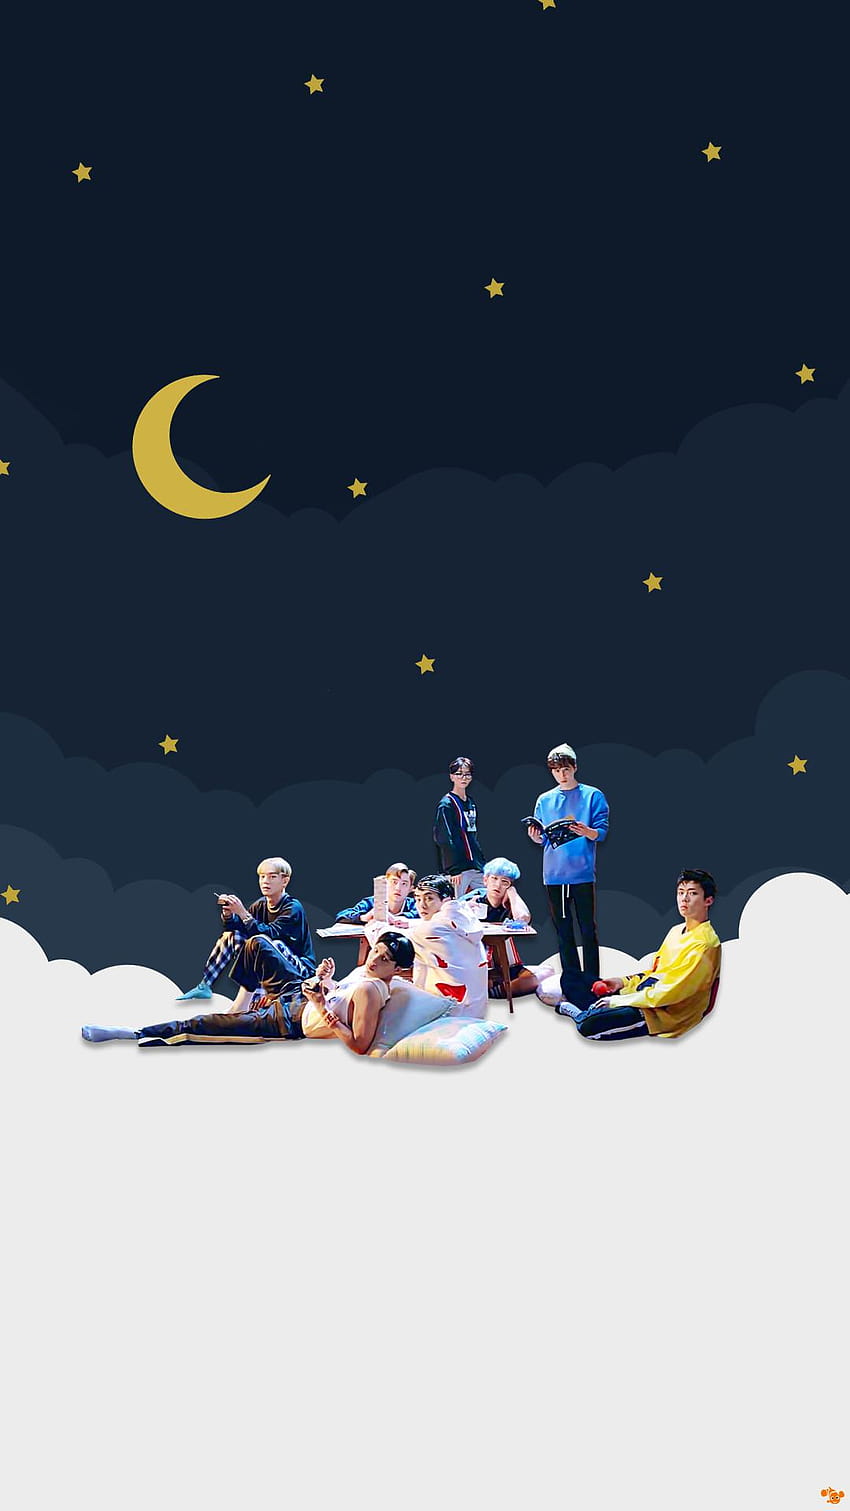 Chanyeol, aesthetic exo HD phone wallpaper